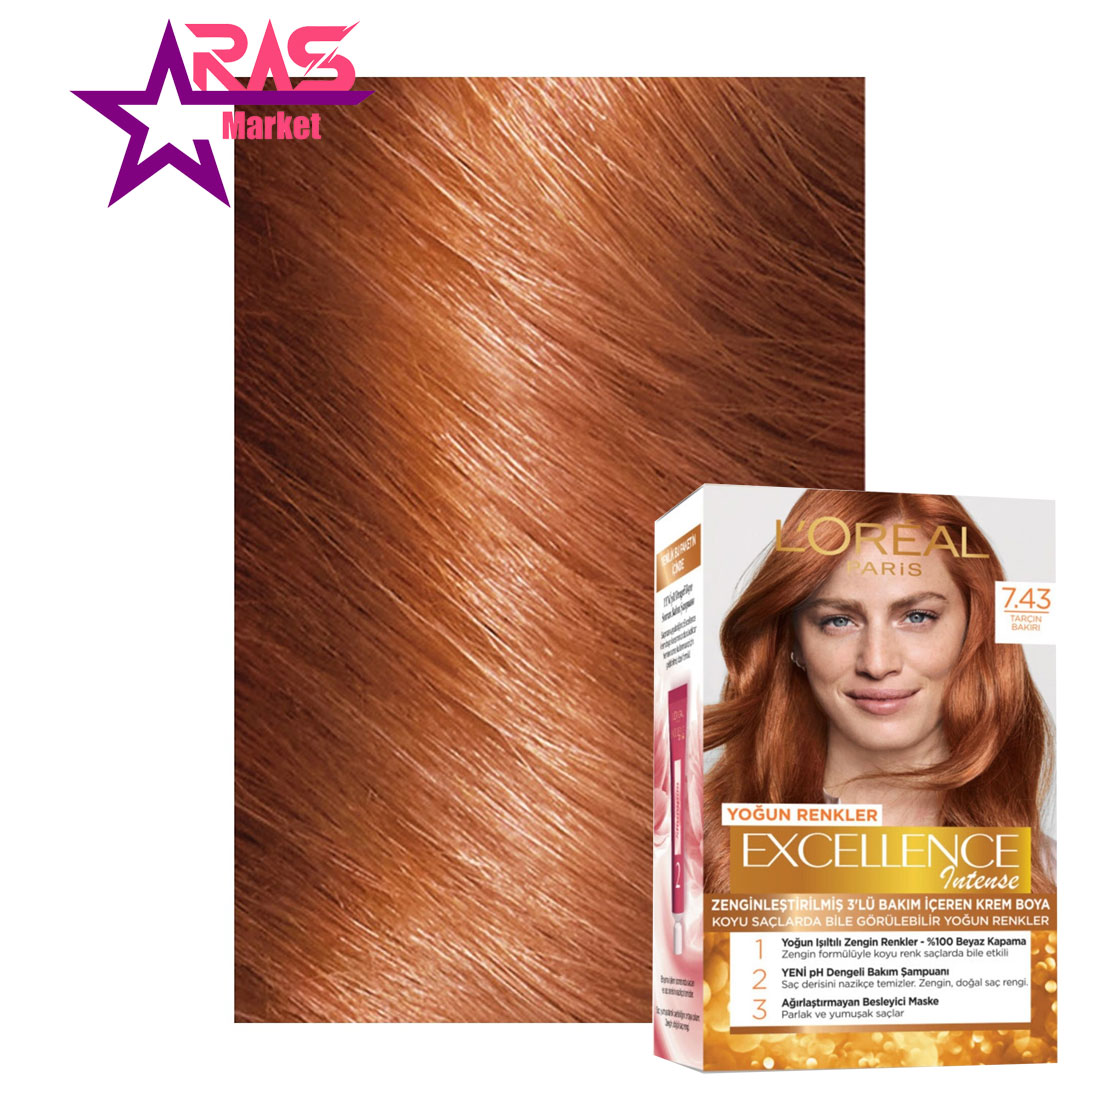 کیت رنگ مو لورآل سری Excellence Intense شماره 7.43 ، خرید اینترنتی محصولات شوینده و بهداشتی